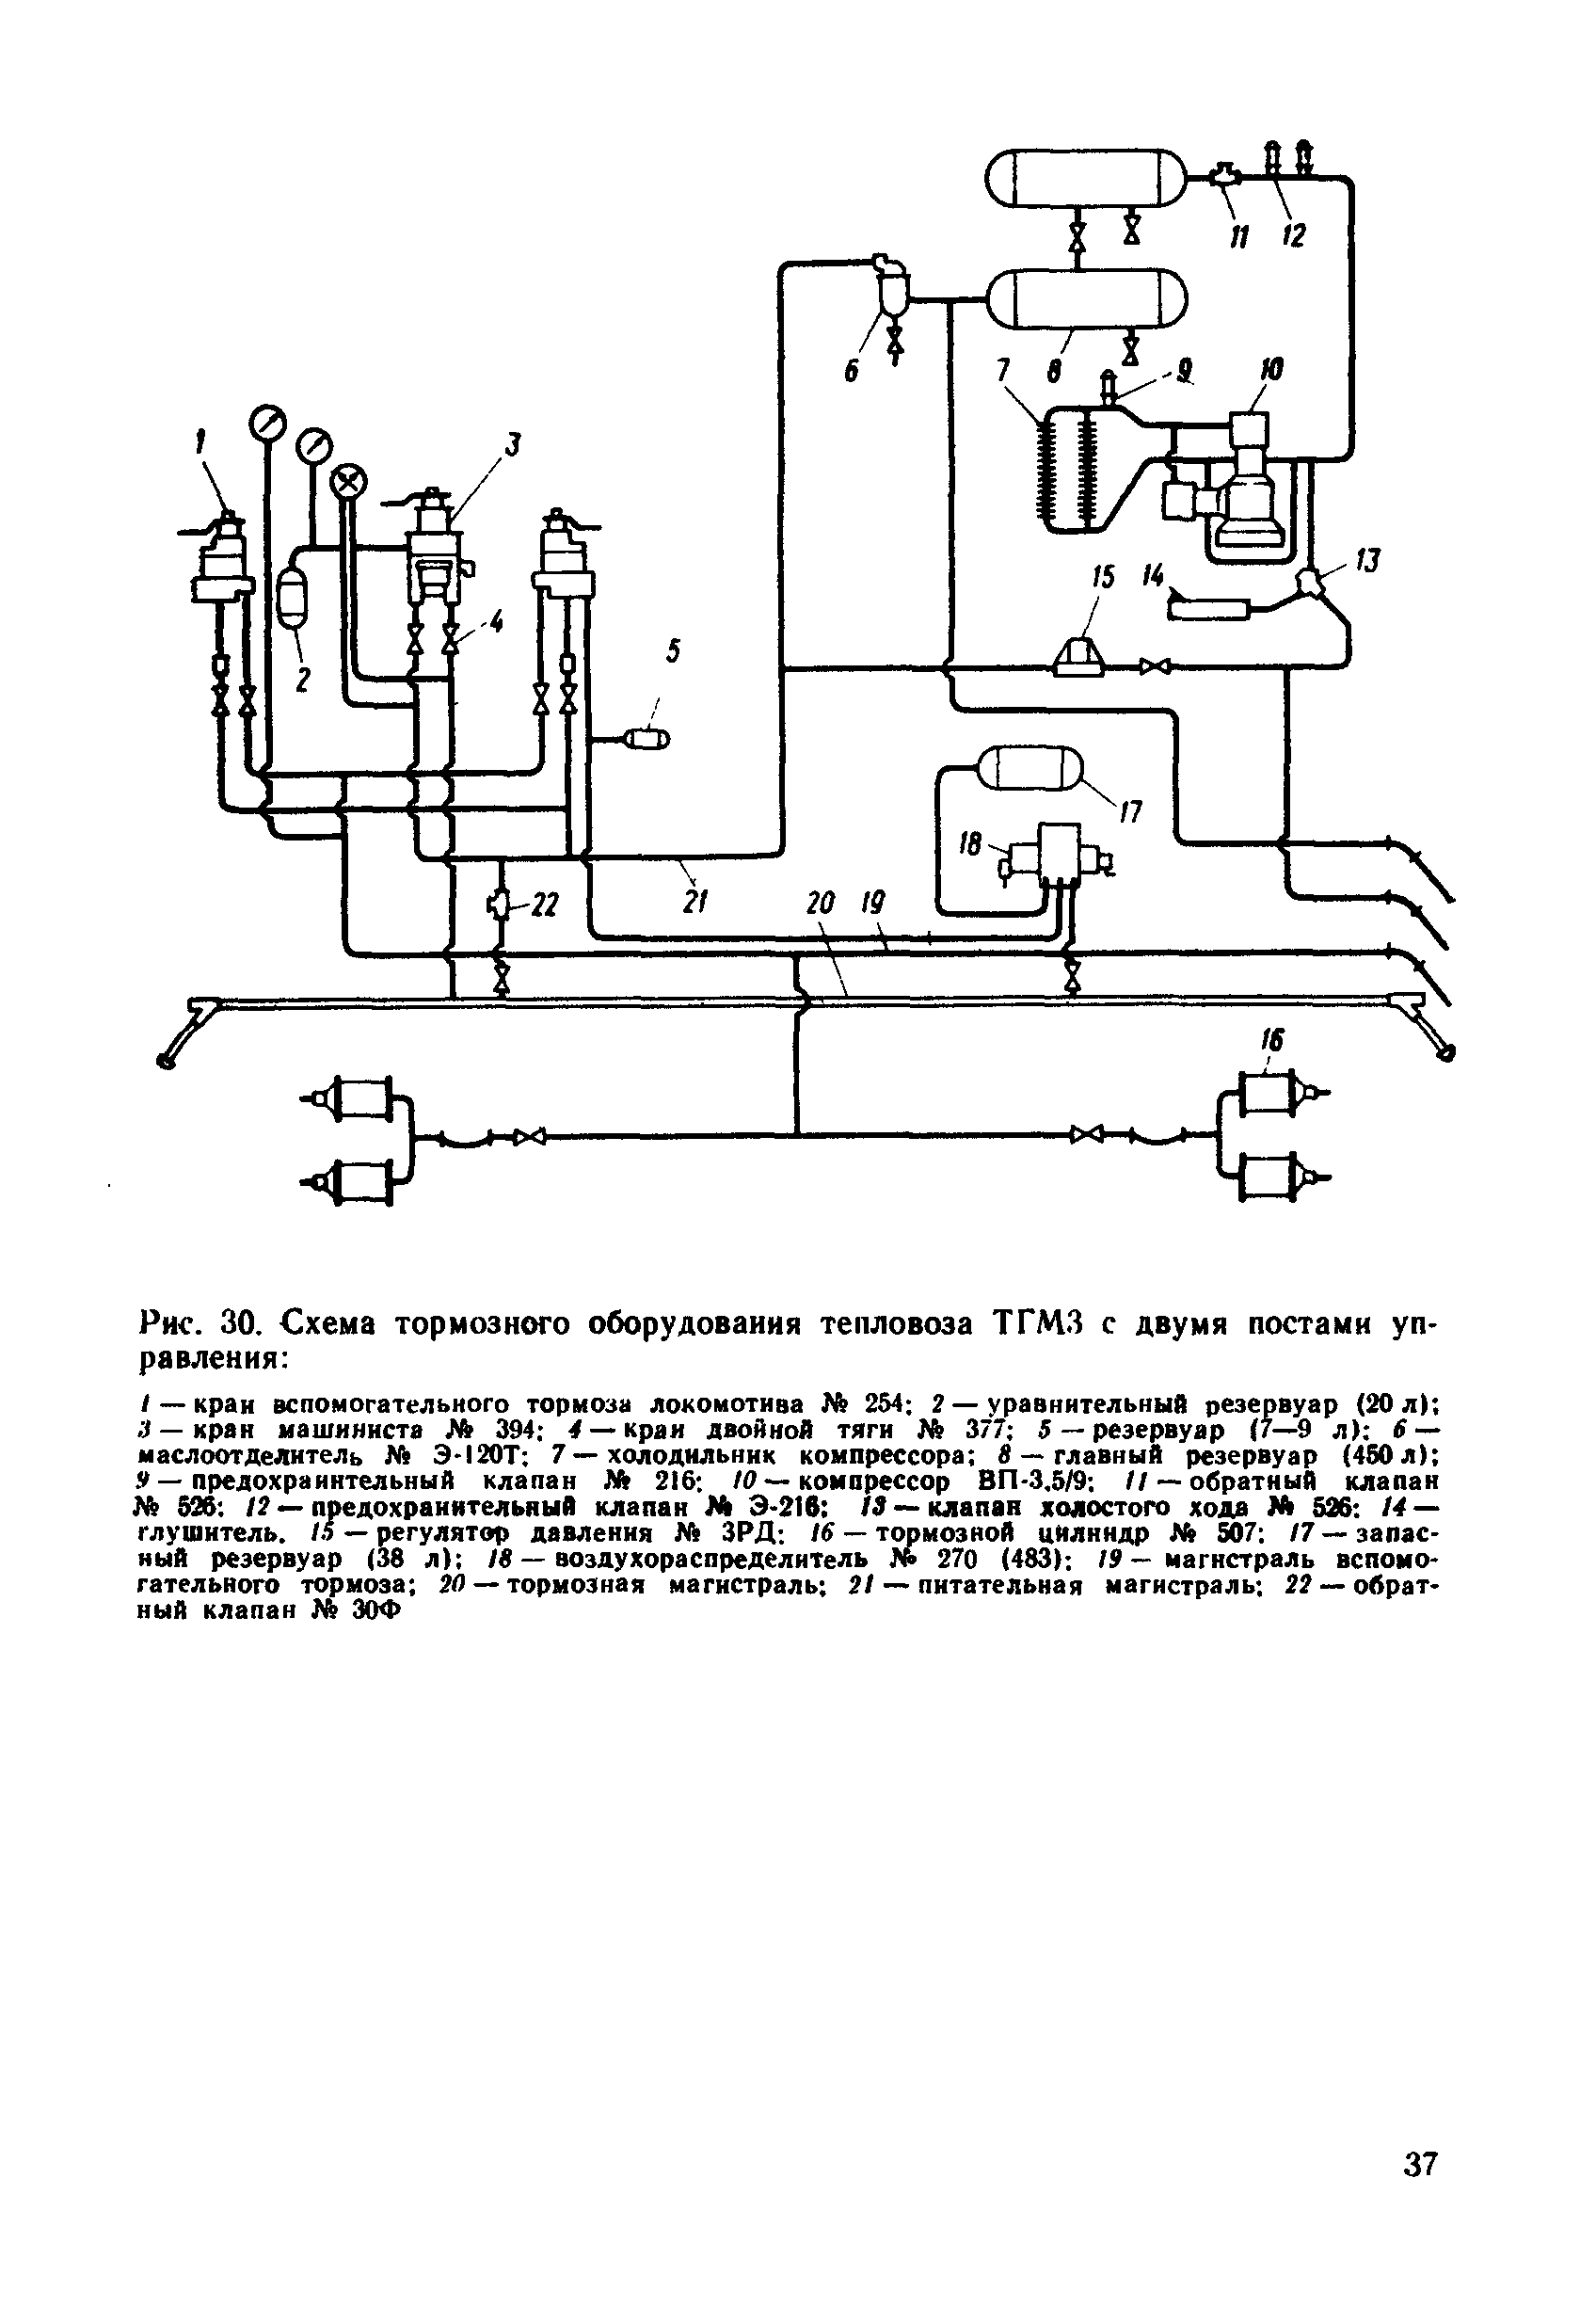 Рис. 30. Схема тормозного оборудования тепловоза ТГМЗ с двумя постами управления 
